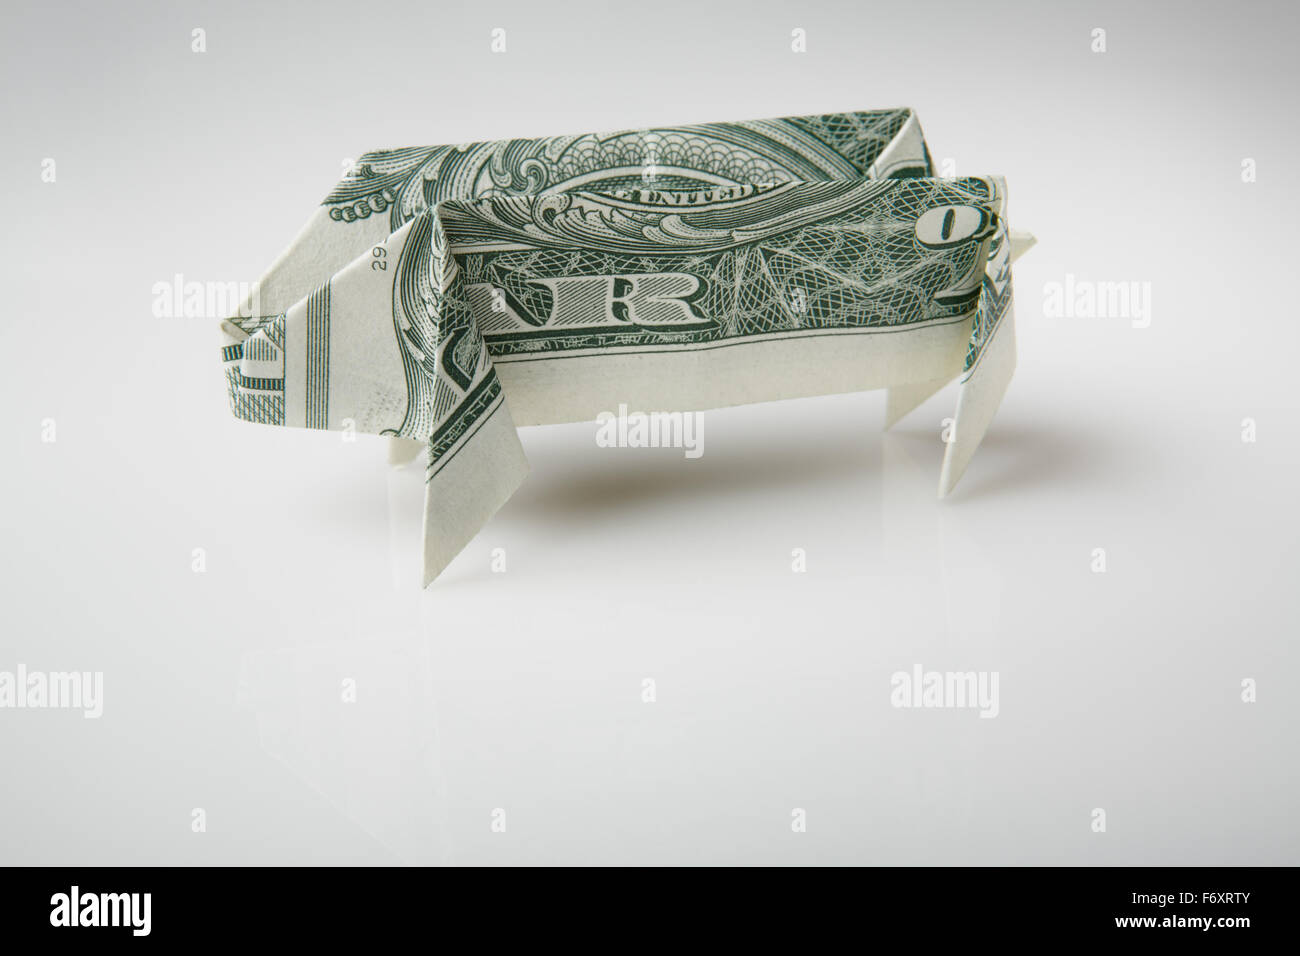 Stillleben Bild eines Schweins Origami zu machen, von einem US-Dollar-note Stockfoto